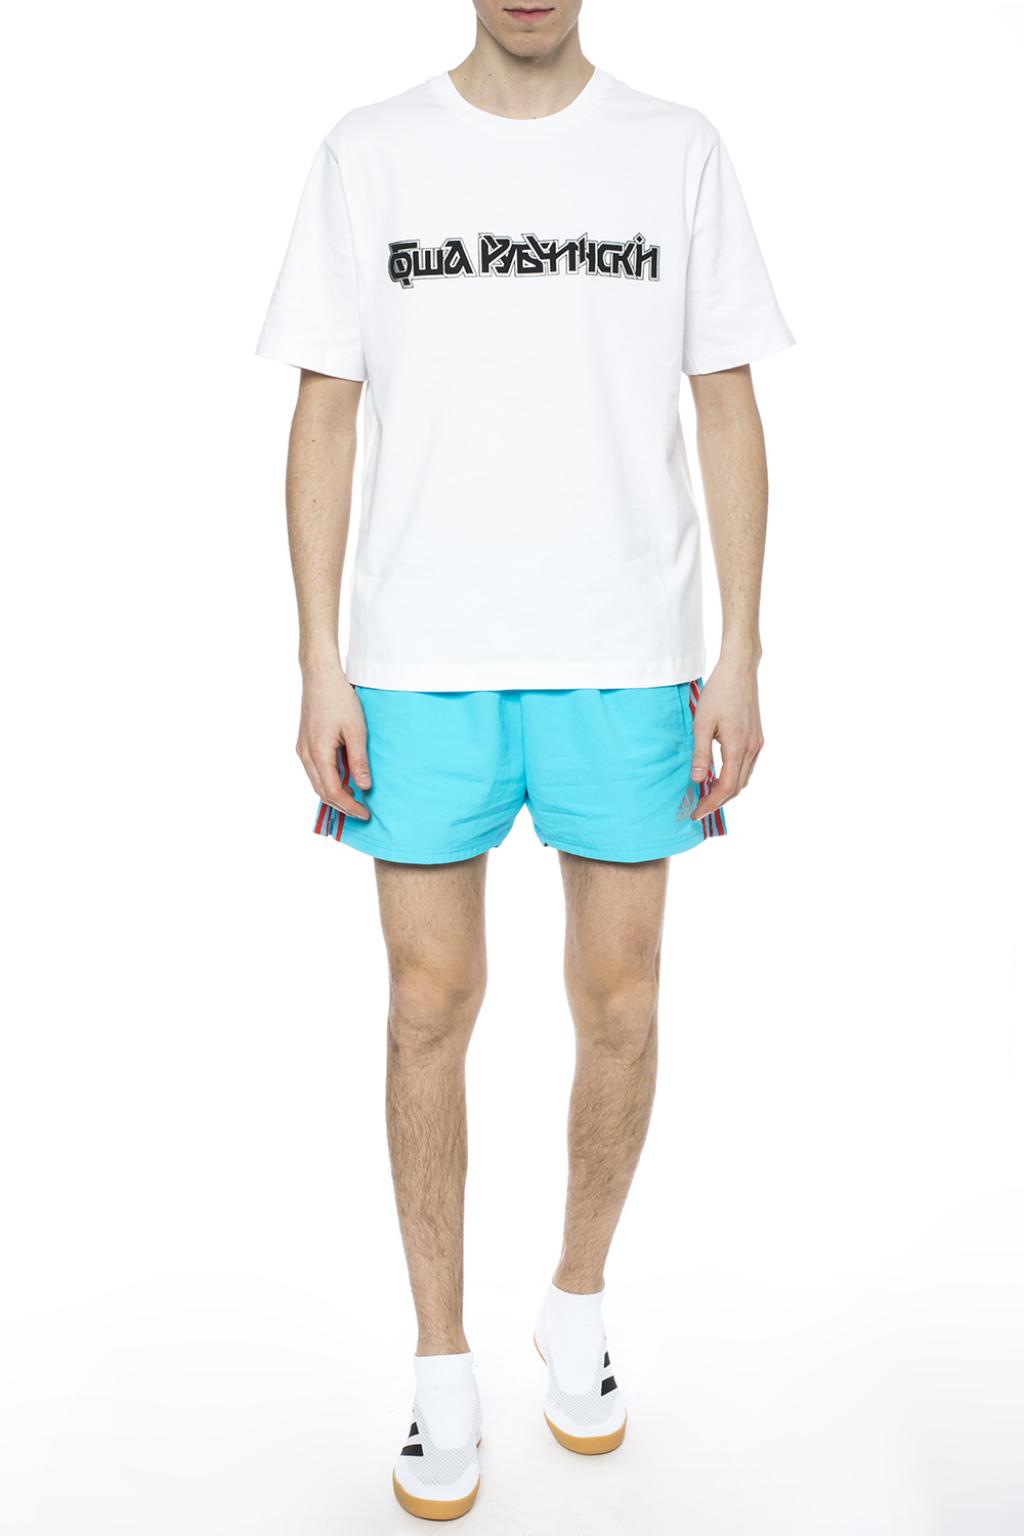 gosha x adidas shorts